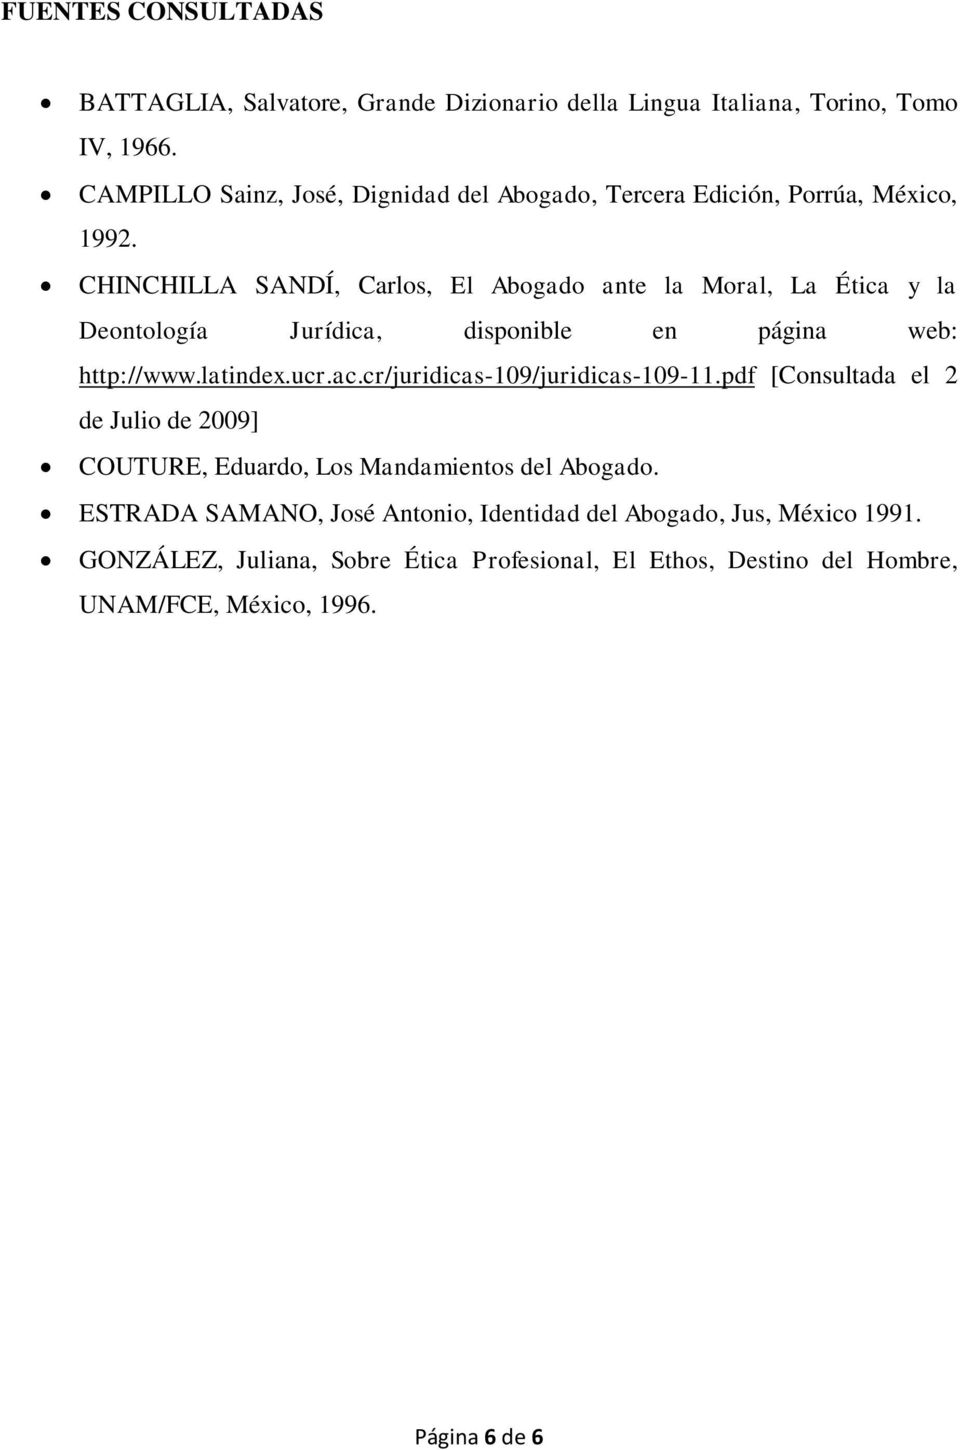 CHINCHILLA SANDÍ, Carlos, El Abogado ante la Moral, La Ética y la Deontología Jurídica, disponible en página web: http://www.latindex.ucr.ac.